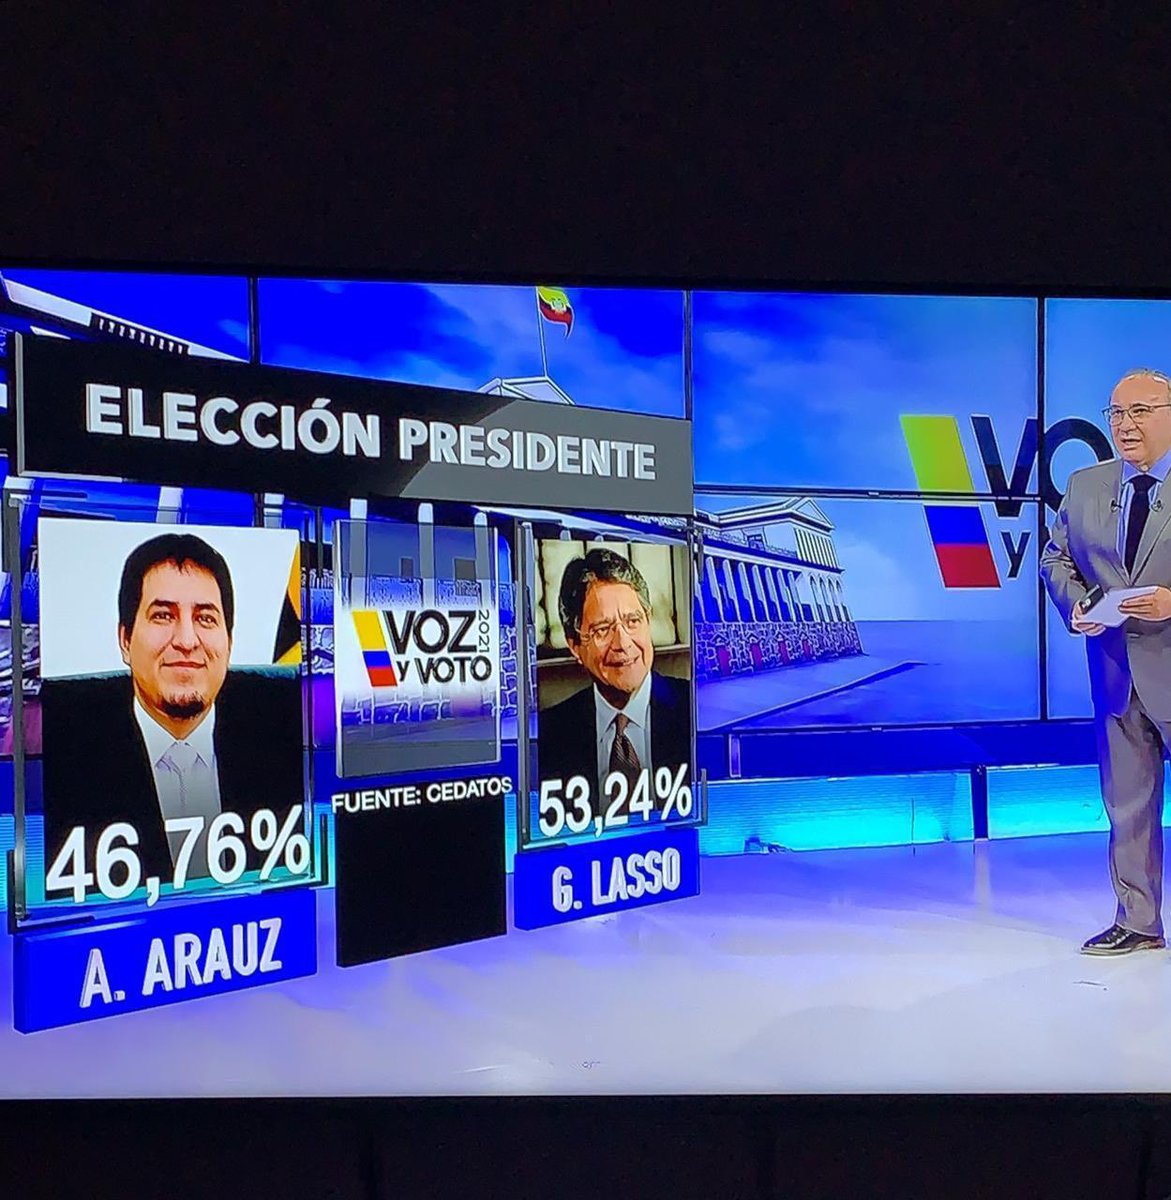 Dos encuestadoras en Ecuador, una simpatizantes de Correa, otra vinculada al sector empresarial, dan por ganador a Guillermo Lasso, pro mercado-democracia, como el próximo Presidente. De confirmarse, sería una gran noticia para el Ecuador y para América Latina.